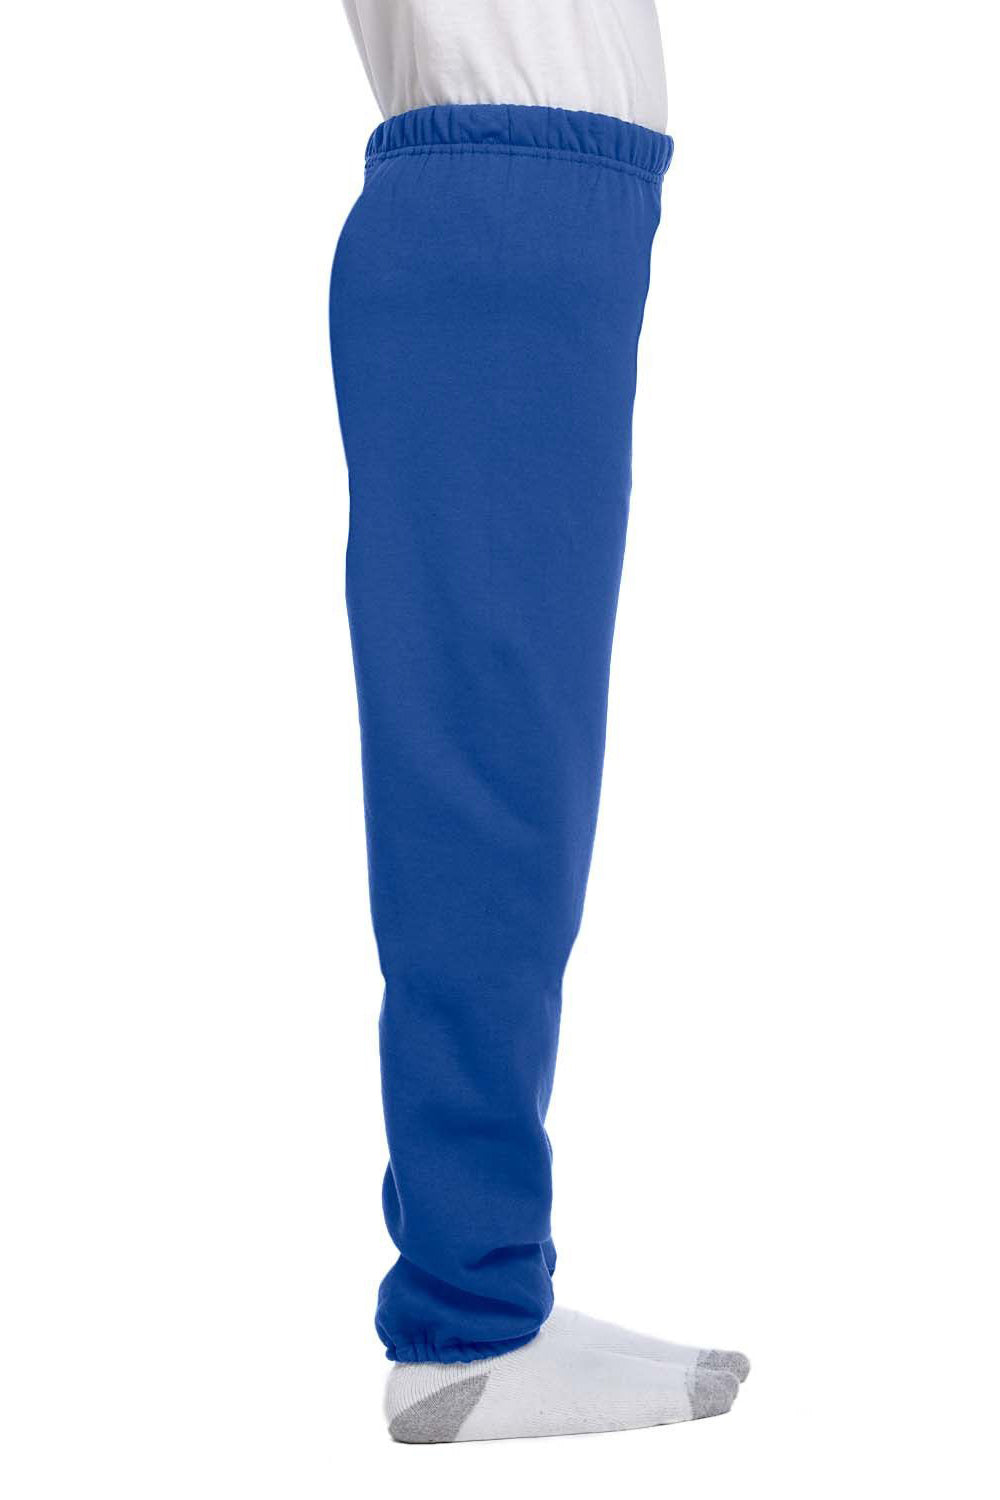 Jerzees 973B Youth NuBlend Fleece Sweatpants Royal Blue Side